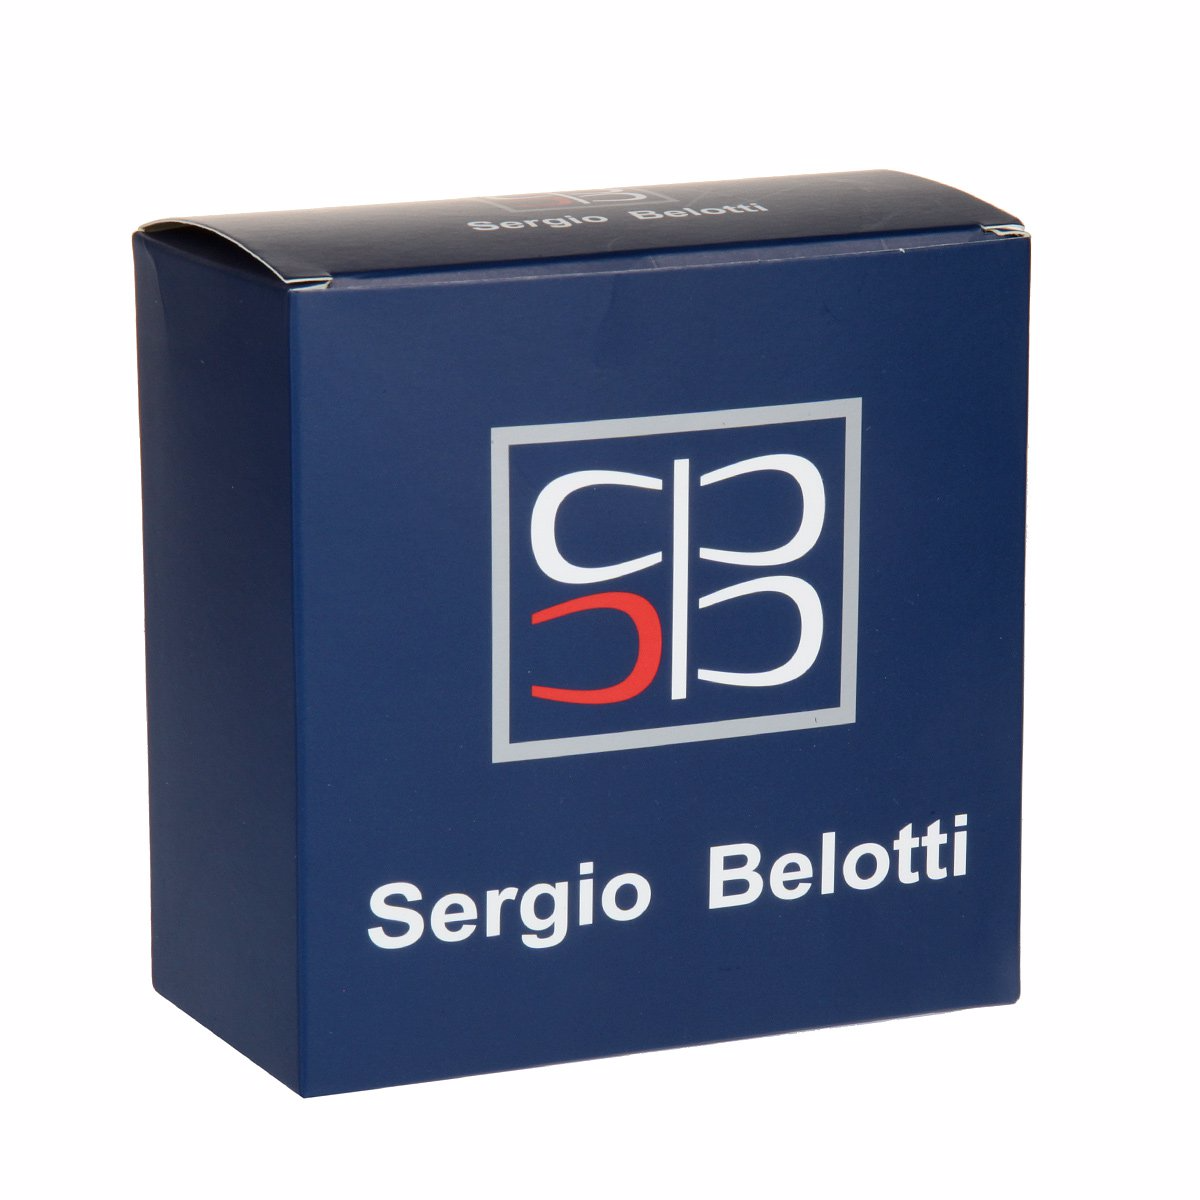 Ремень
Sergio Belotti
5642/35 Pelle Soave Nero Ремни и пояса